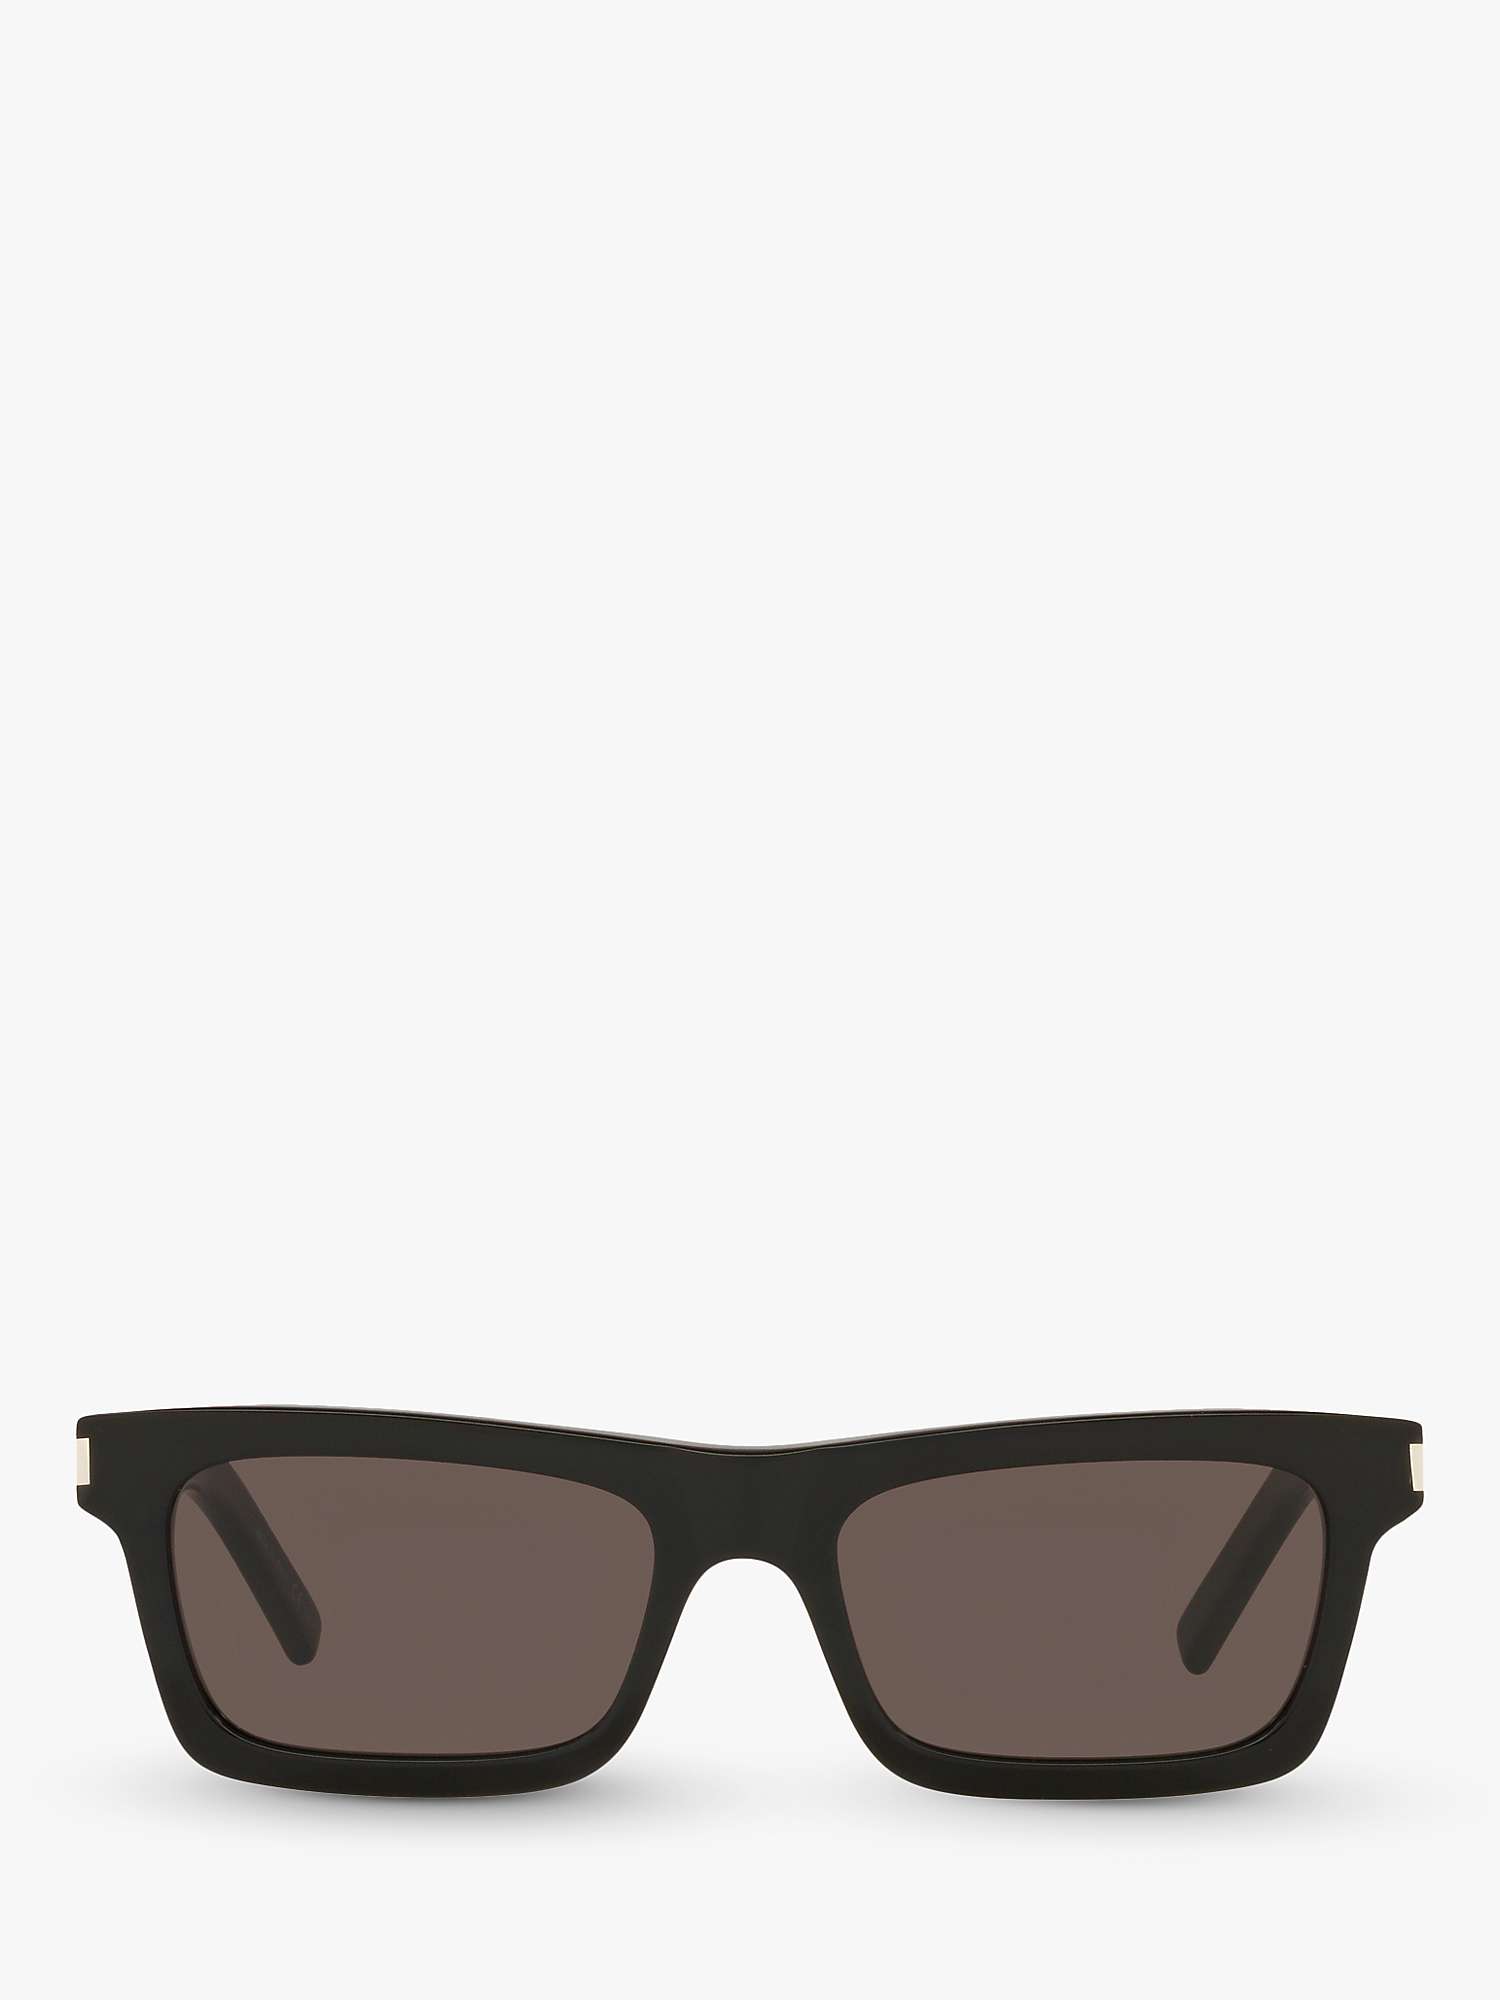 Buy Yves Saint Laurent YS000289 Women's Rectangular Sunglasses, Black Online at johnlewis.com